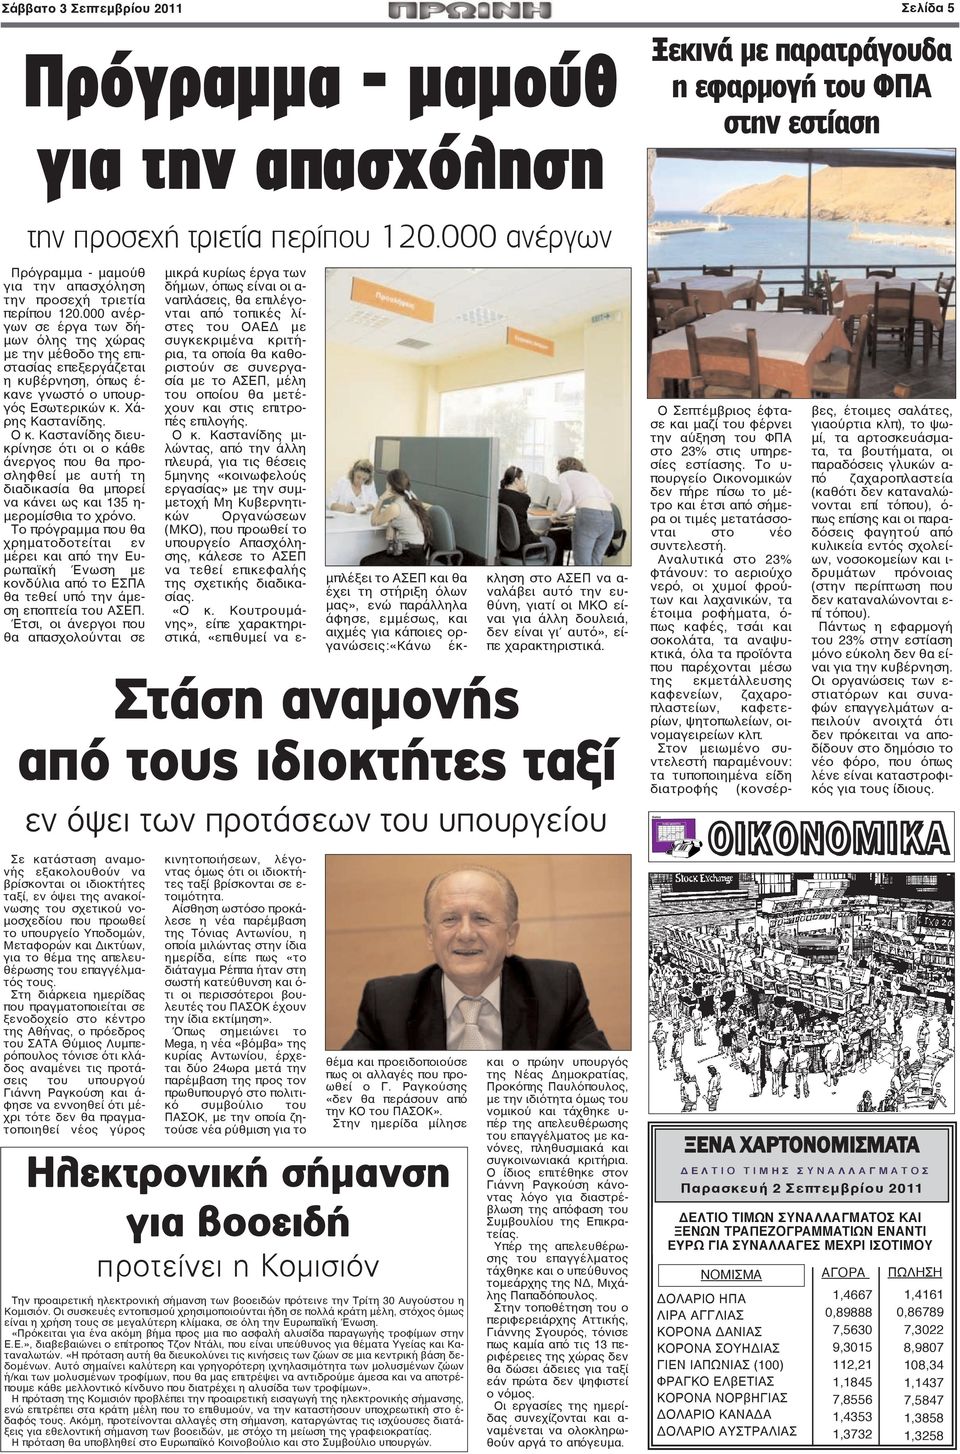 000 ανέργων σε έργα των δήμων όλης της χώρας με την μέθοδο της επιστασίας επεξεργάζεται η κυβέρνηση, όπως έ- κανε γνωστό ο υπουργός Εσωτερικών κ. Χάρης Καστανίδης. Ο κ.